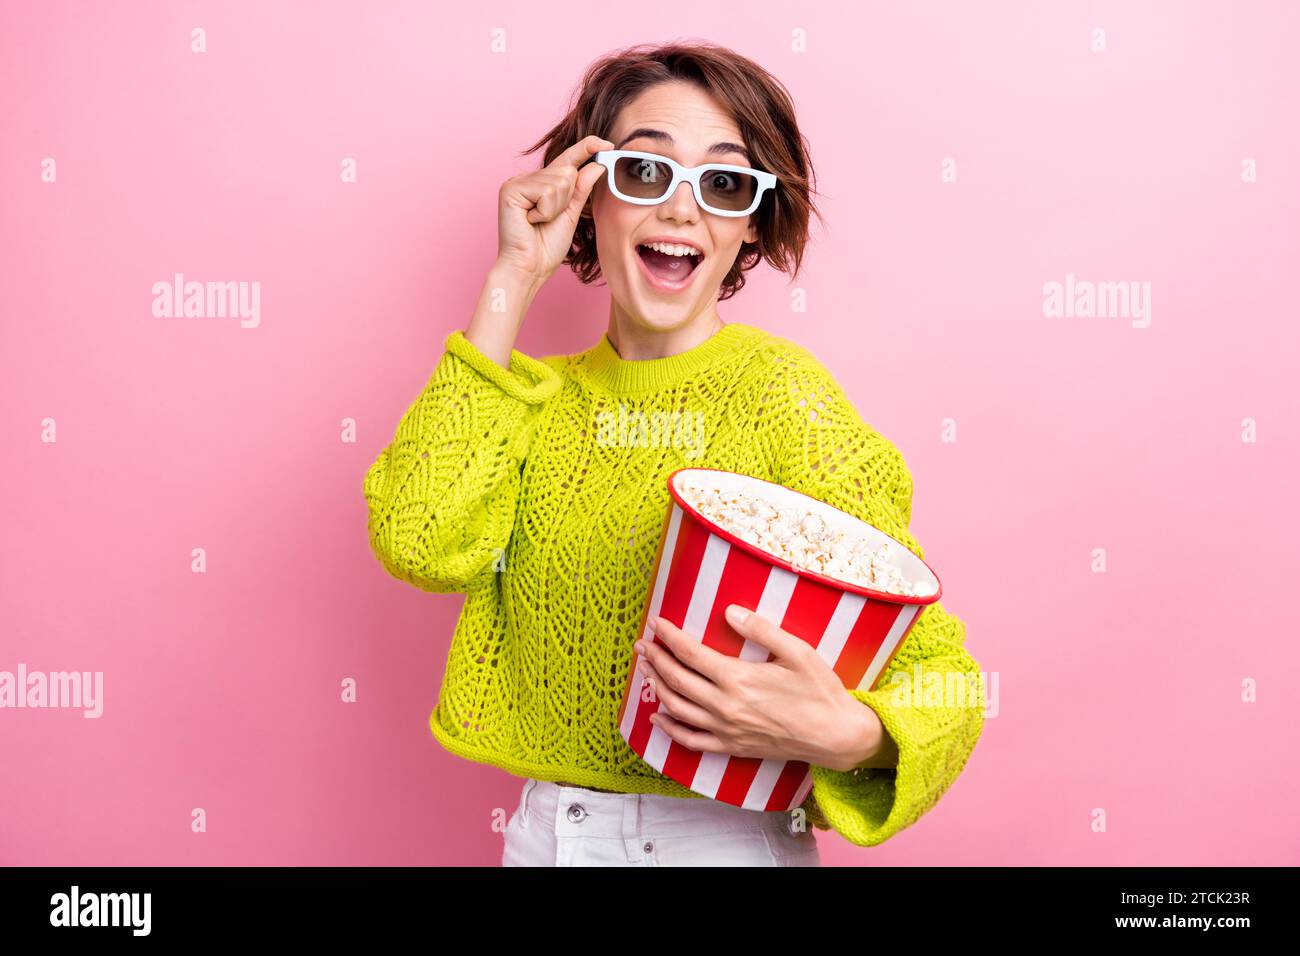 Photo de fille aime regarder des films de première qualité préférés divertissement lunettes tactiles tenir le seau pop-corn isolé sur fond de couleur rose Banque D'Images